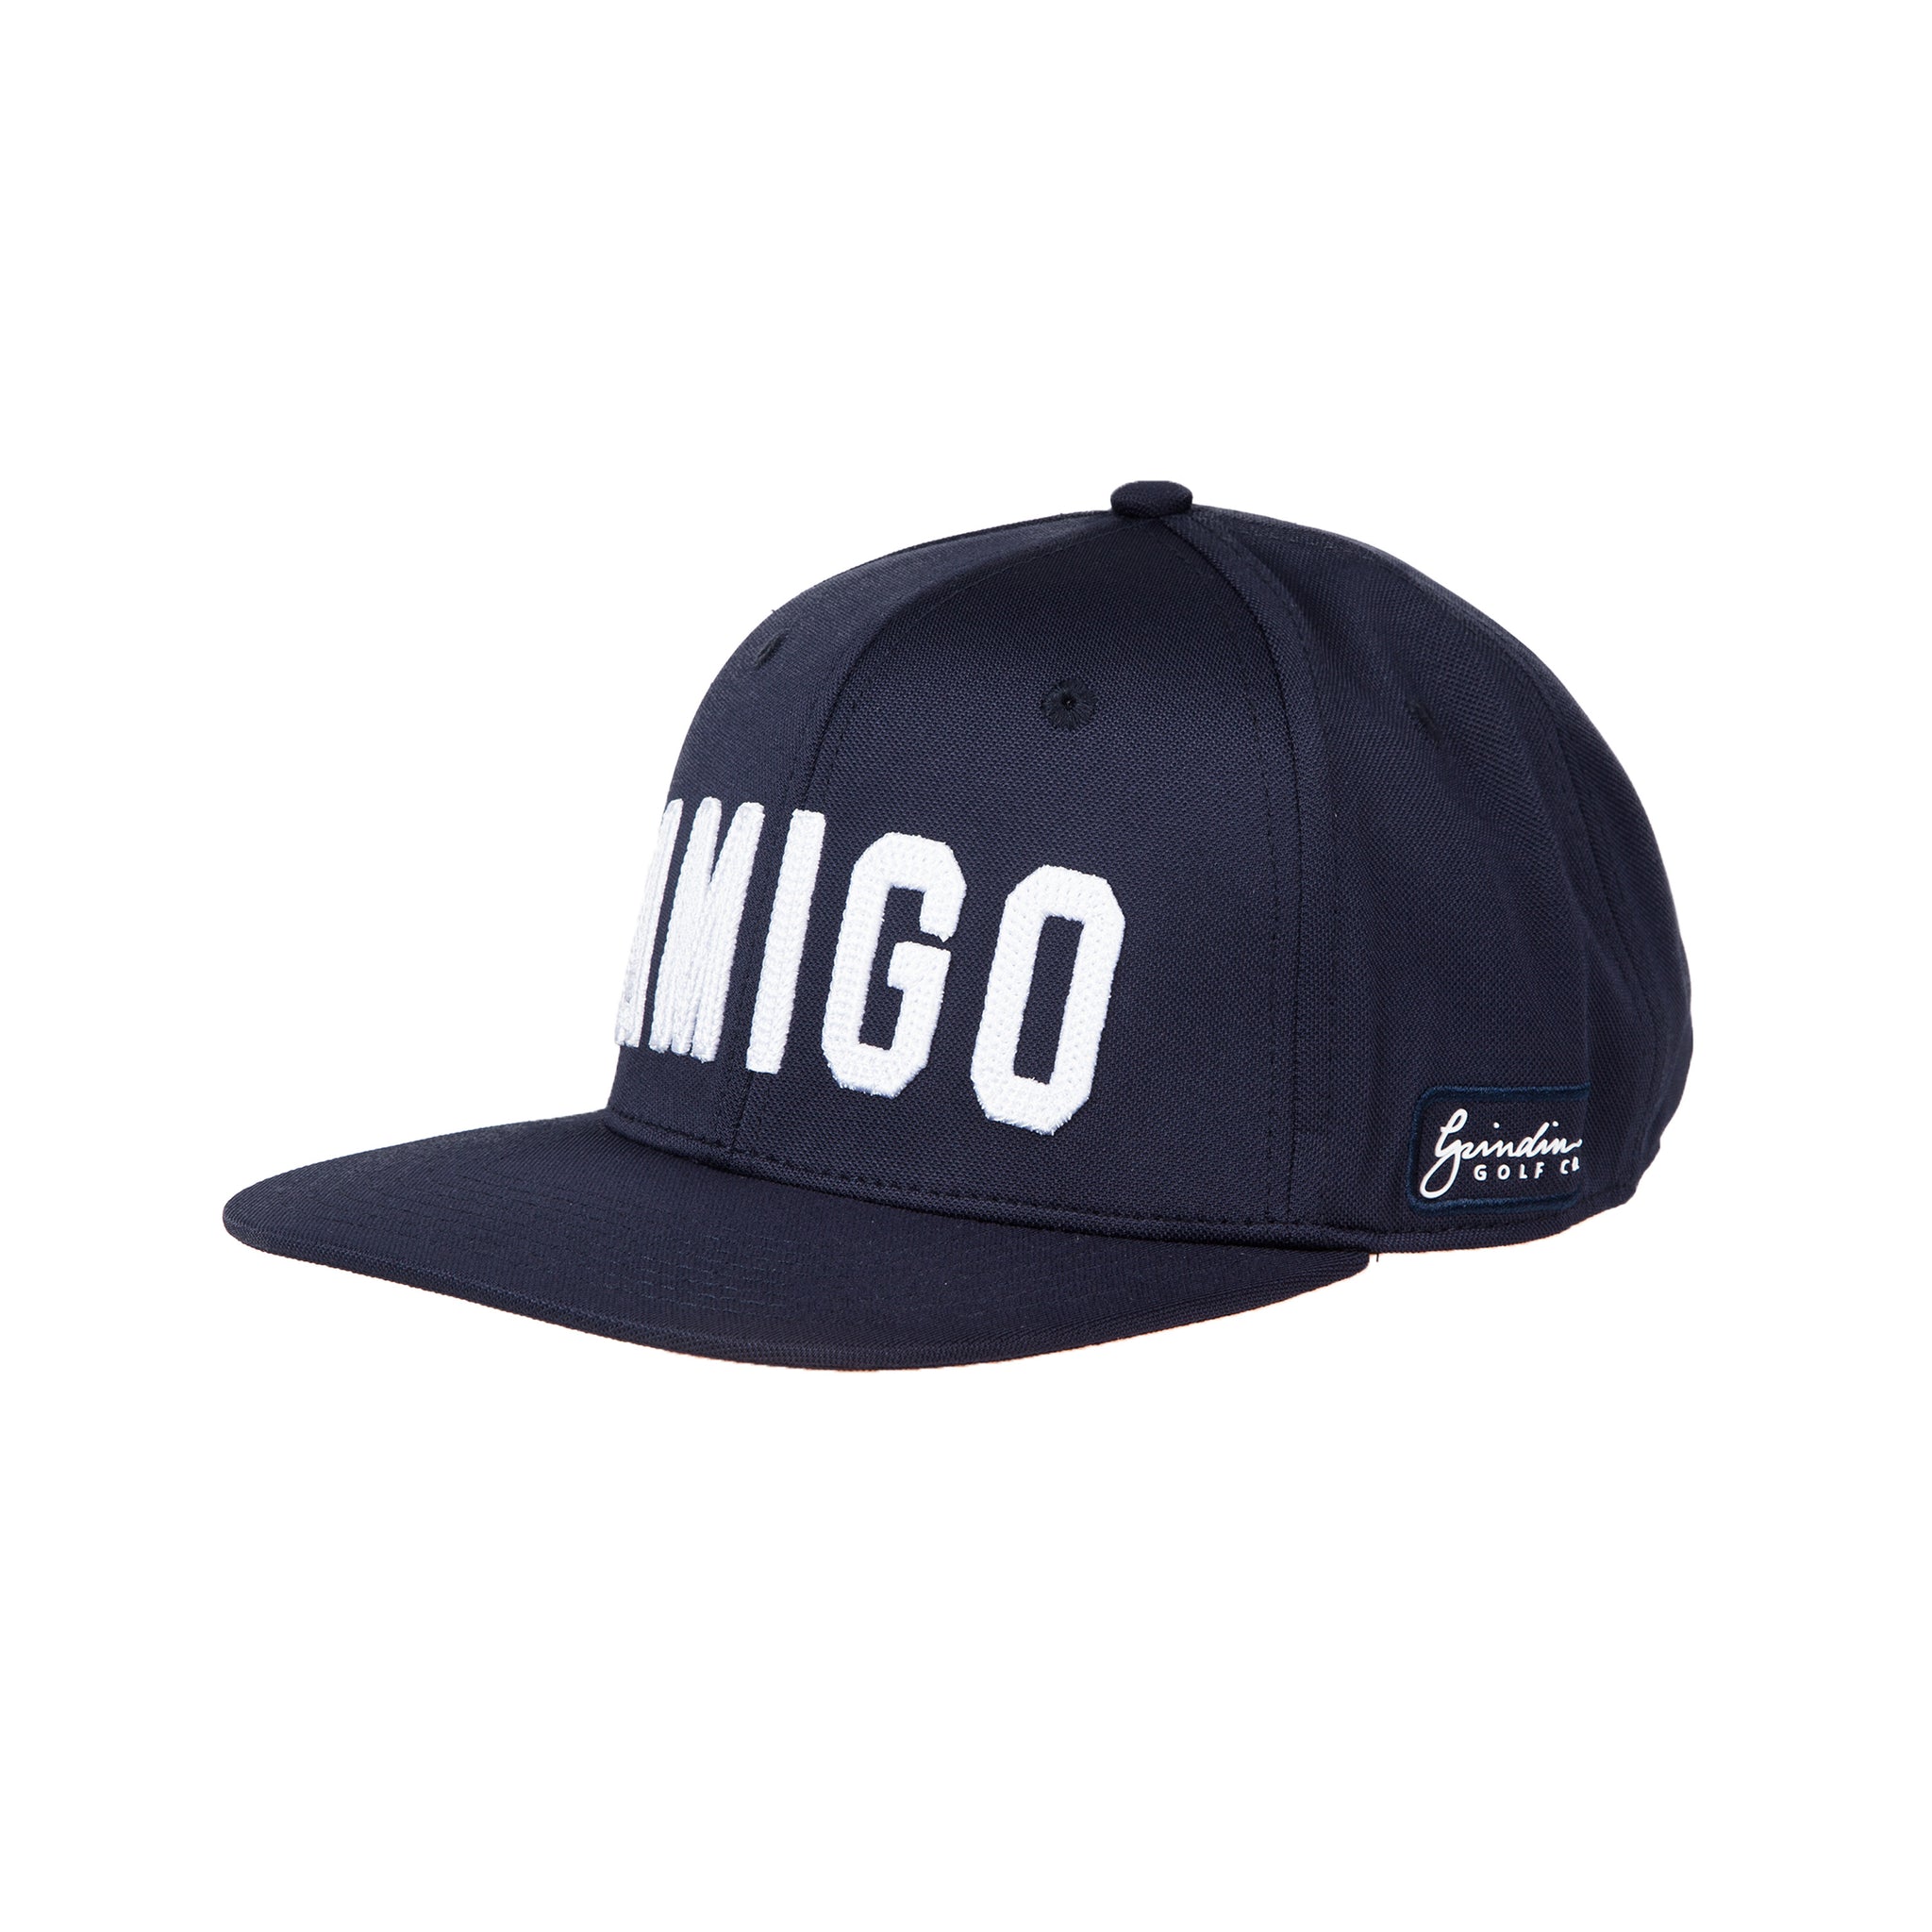 AMIGO Snapback Hat - Navy Blue / White